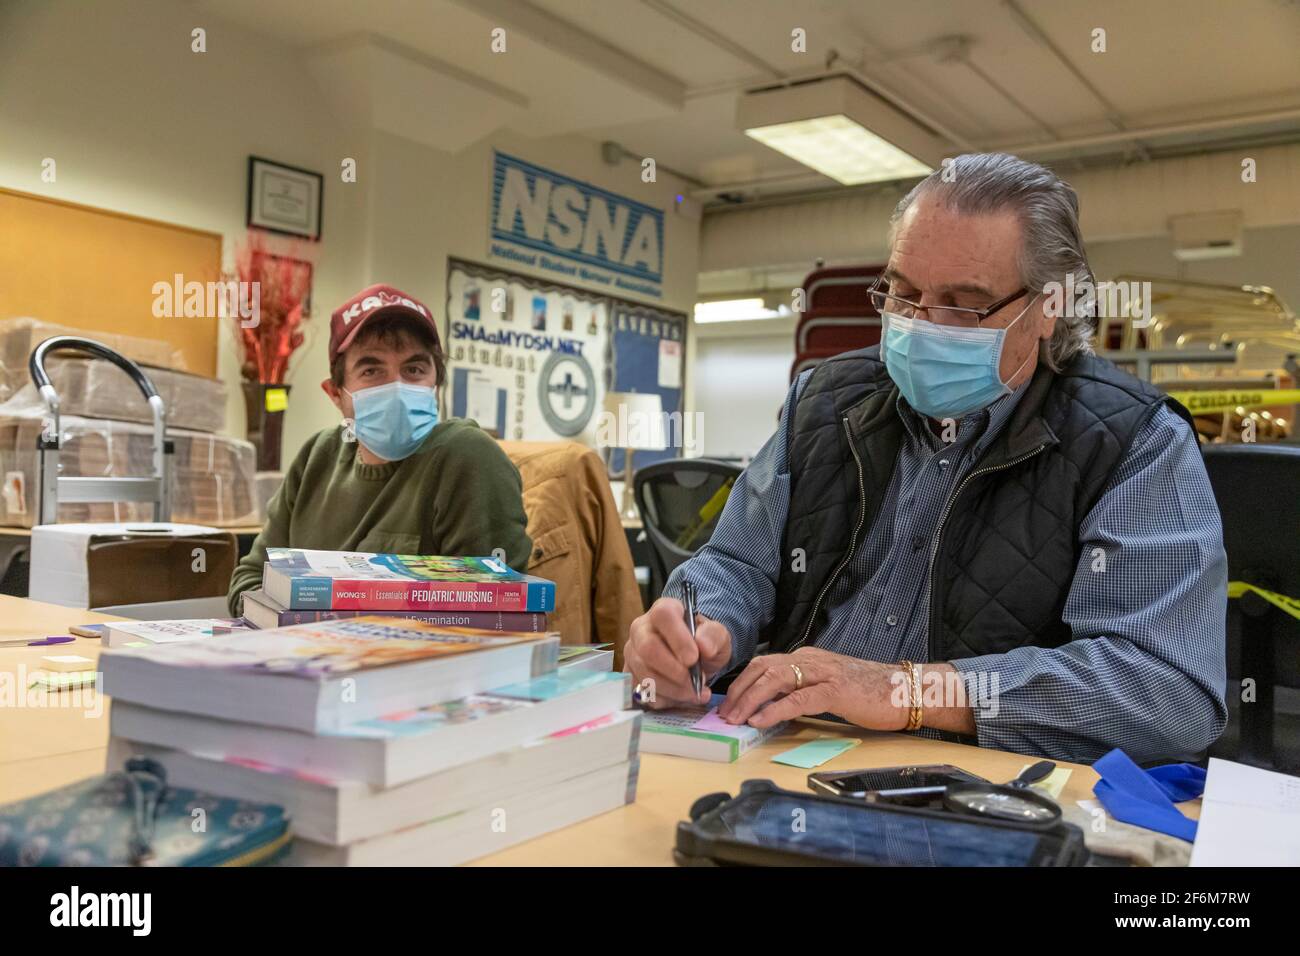 Denver, Colorado - un comprador de libros de texto usados busca libros que  un estudiante de enfermería está ofreciendo para vender en el Denver  College of Nursing. Libros que tienen Fotografía de